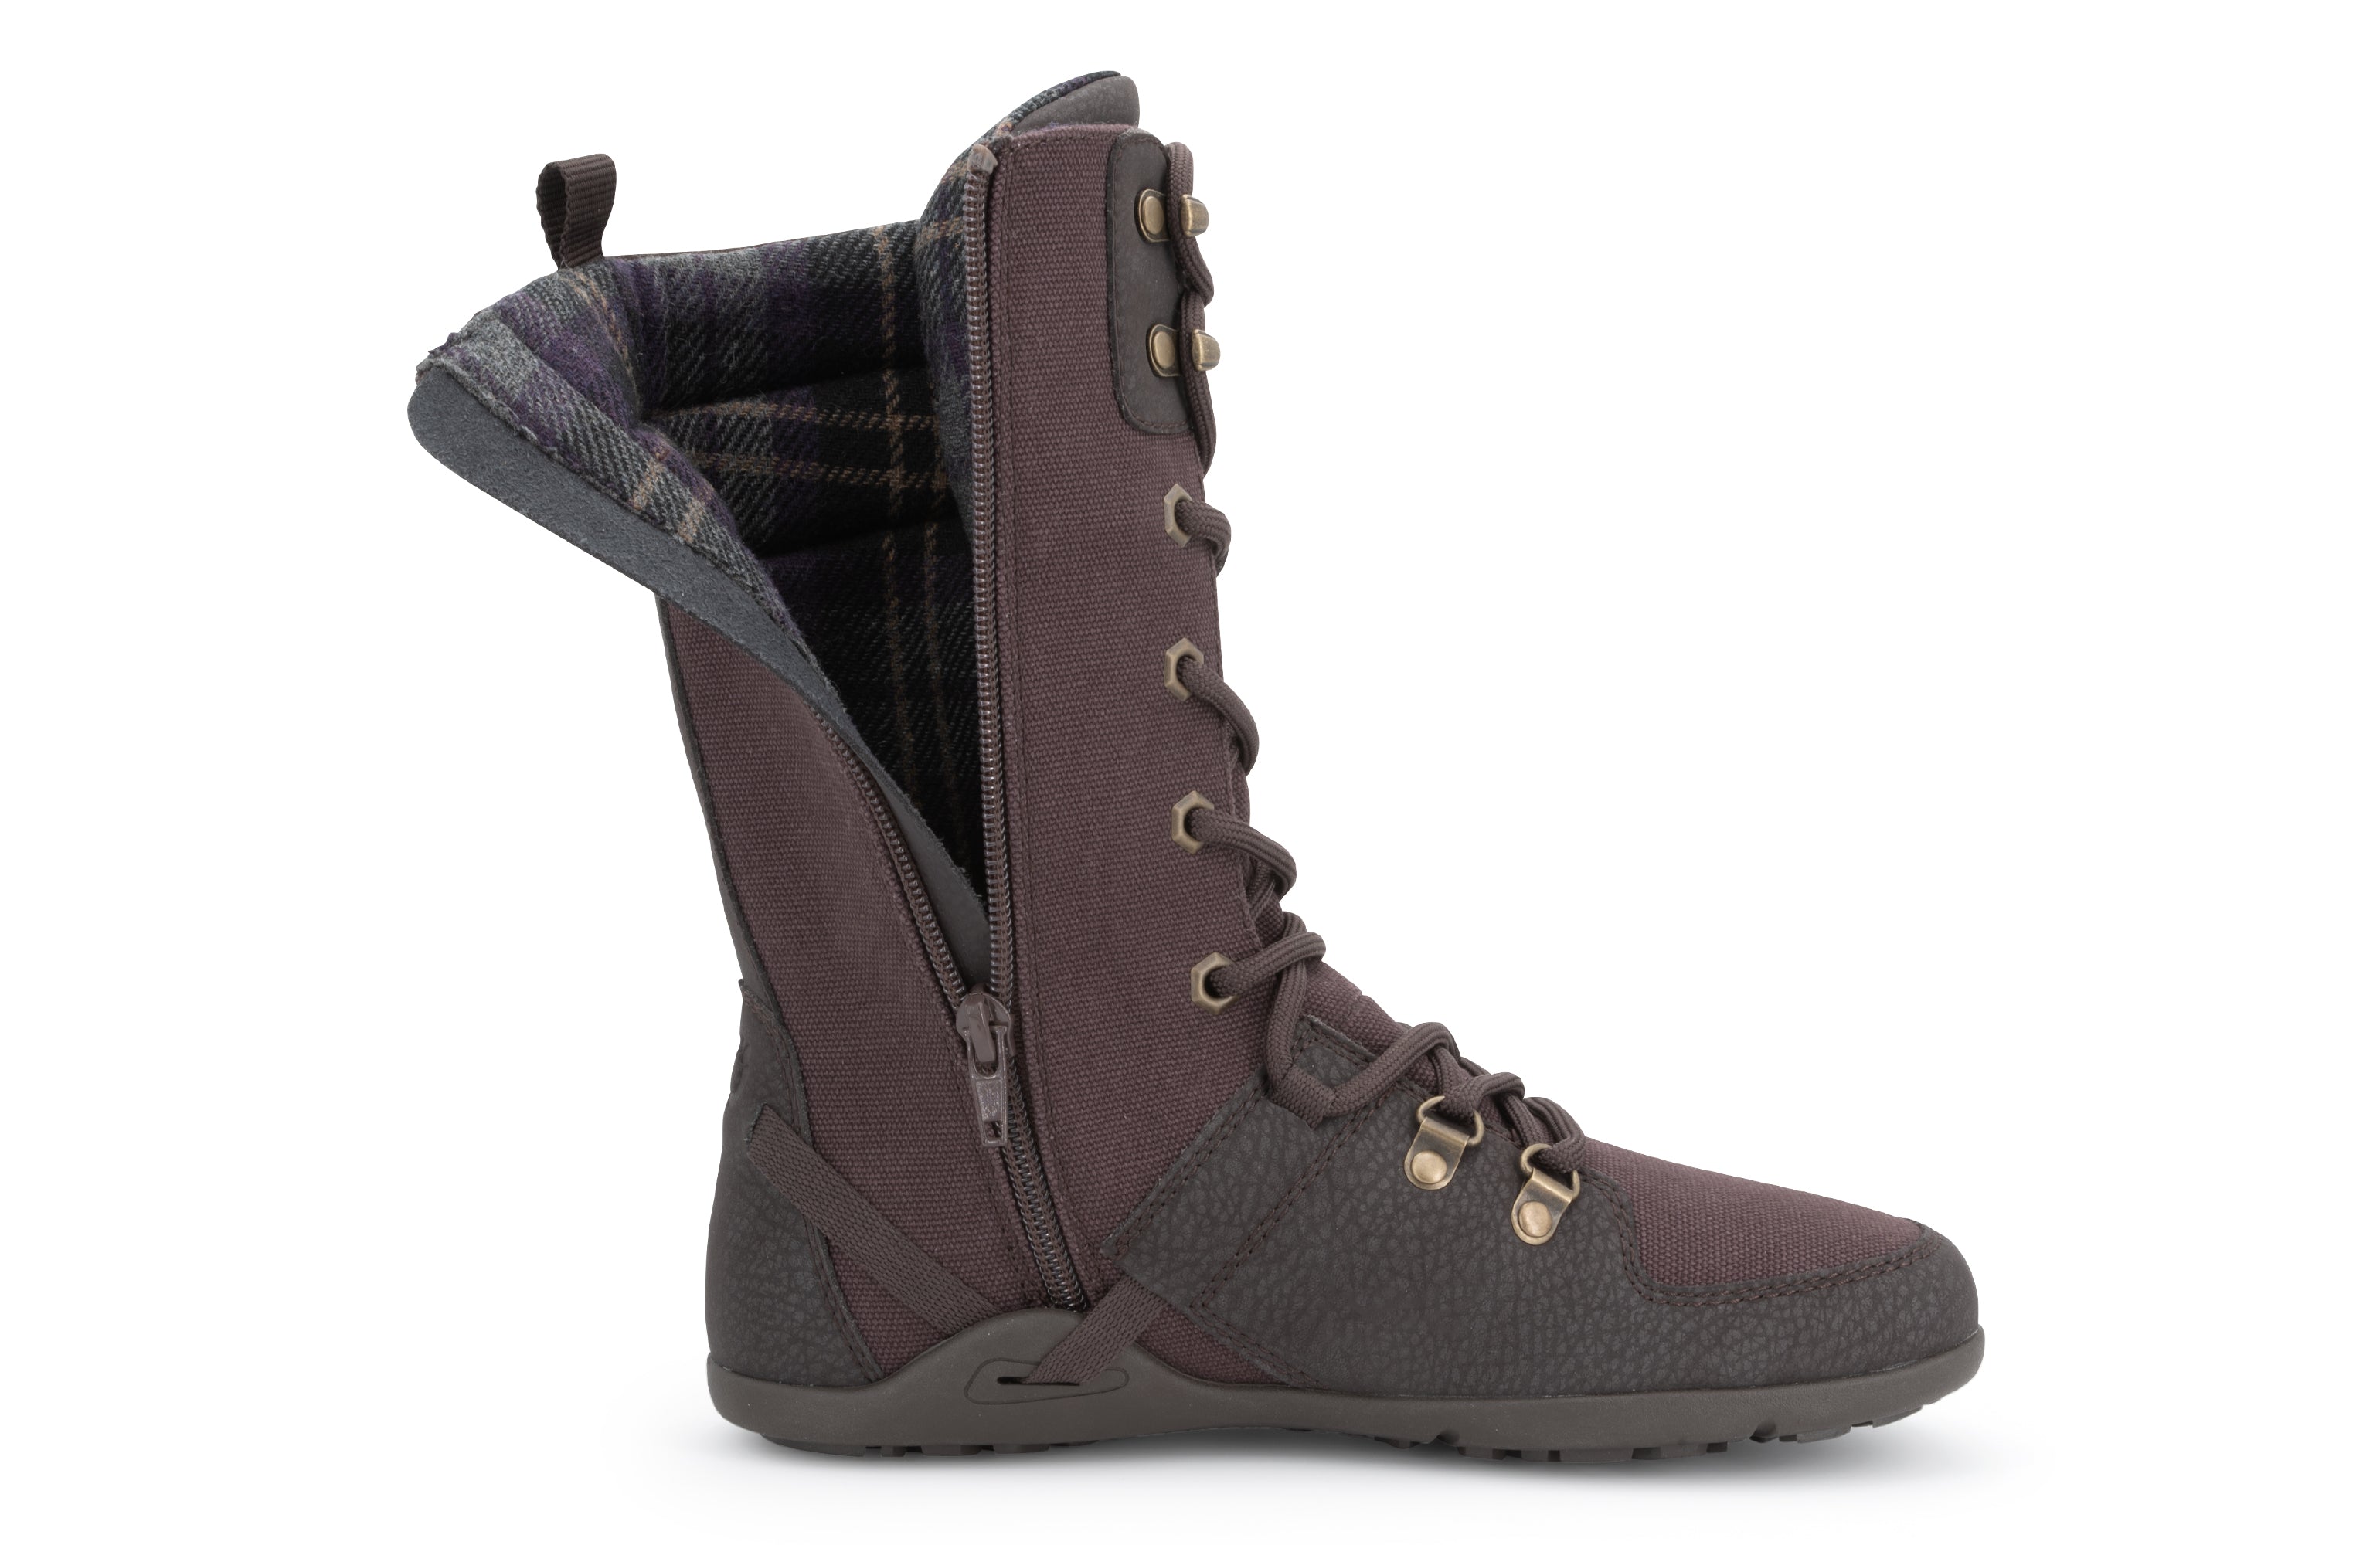 Xero Shoes Mika barfods vinterstøvler til kvinder i farven chocolate plum, detalje